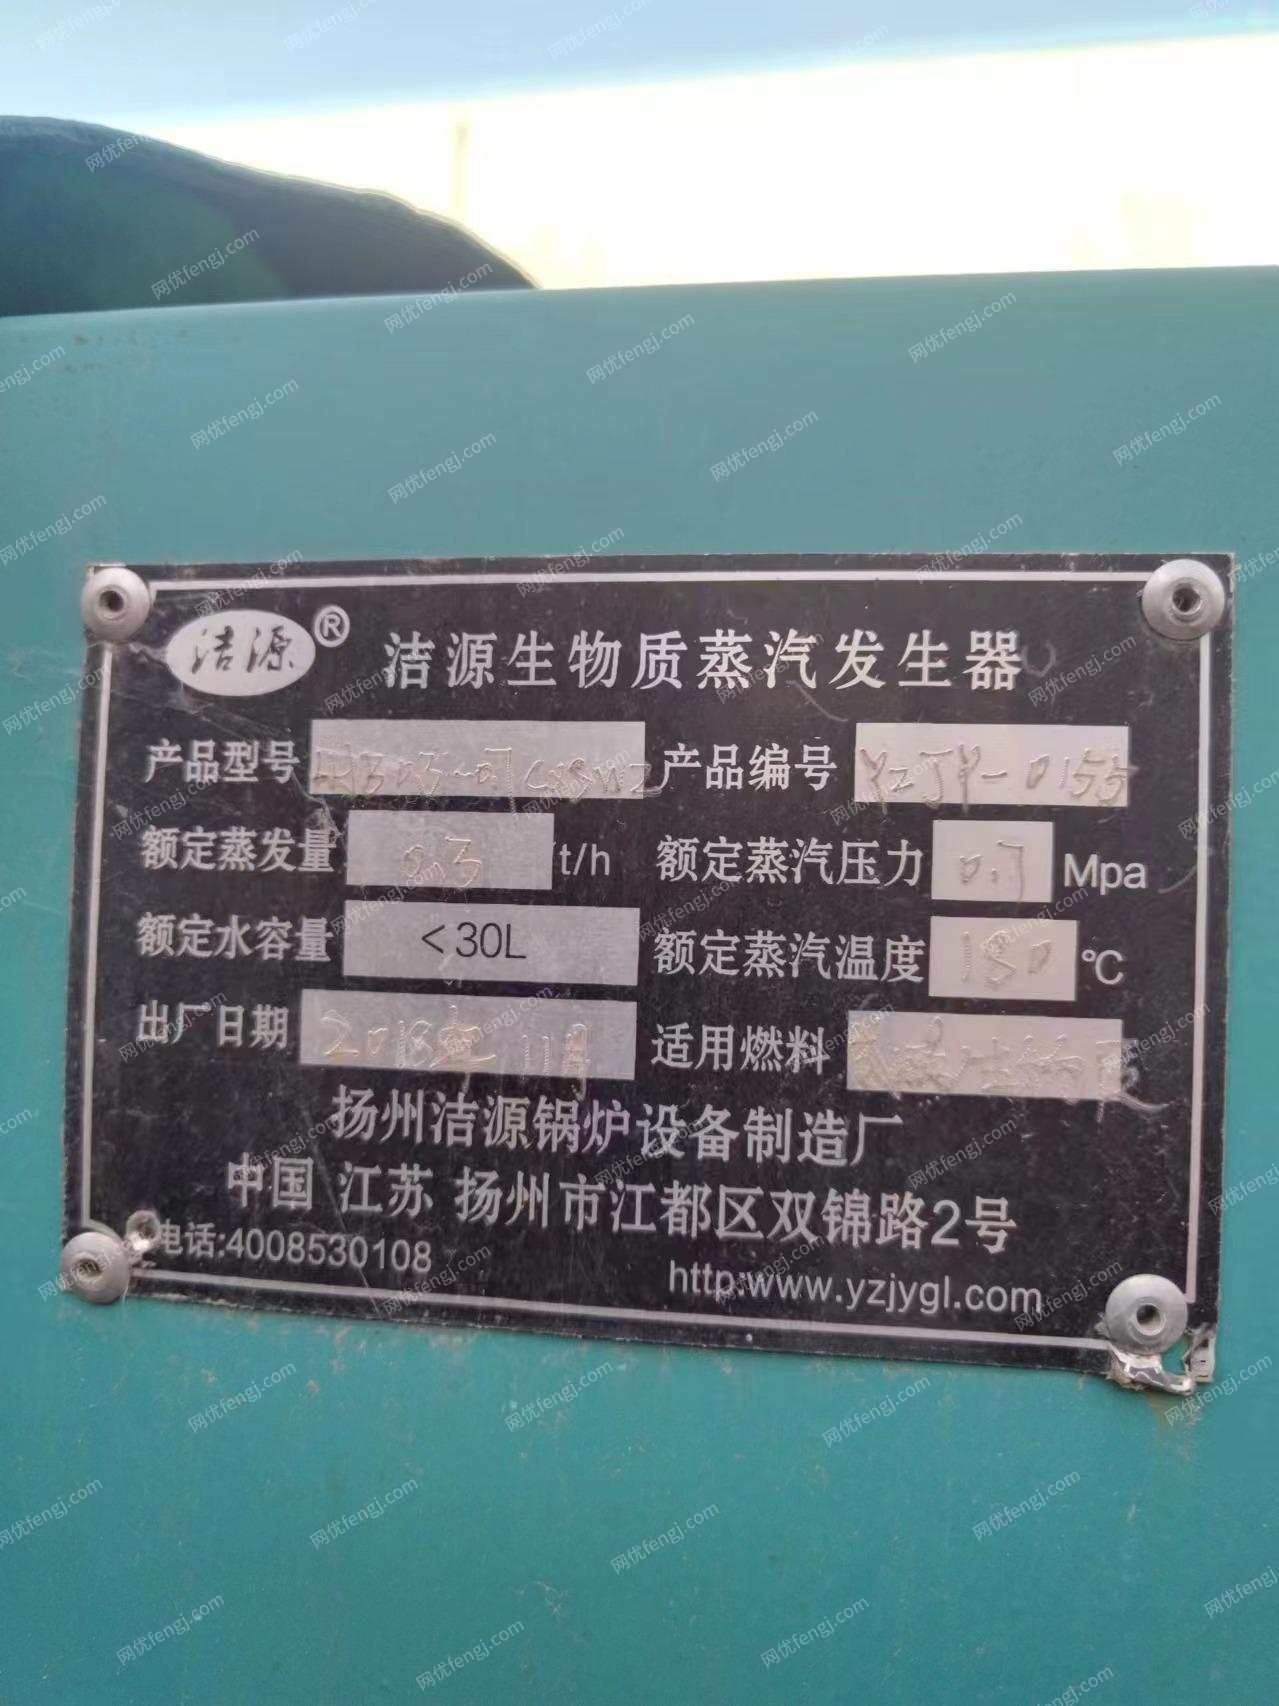 宁夏银川0.3吨生物质蒸汽发生器锅炉2台出售